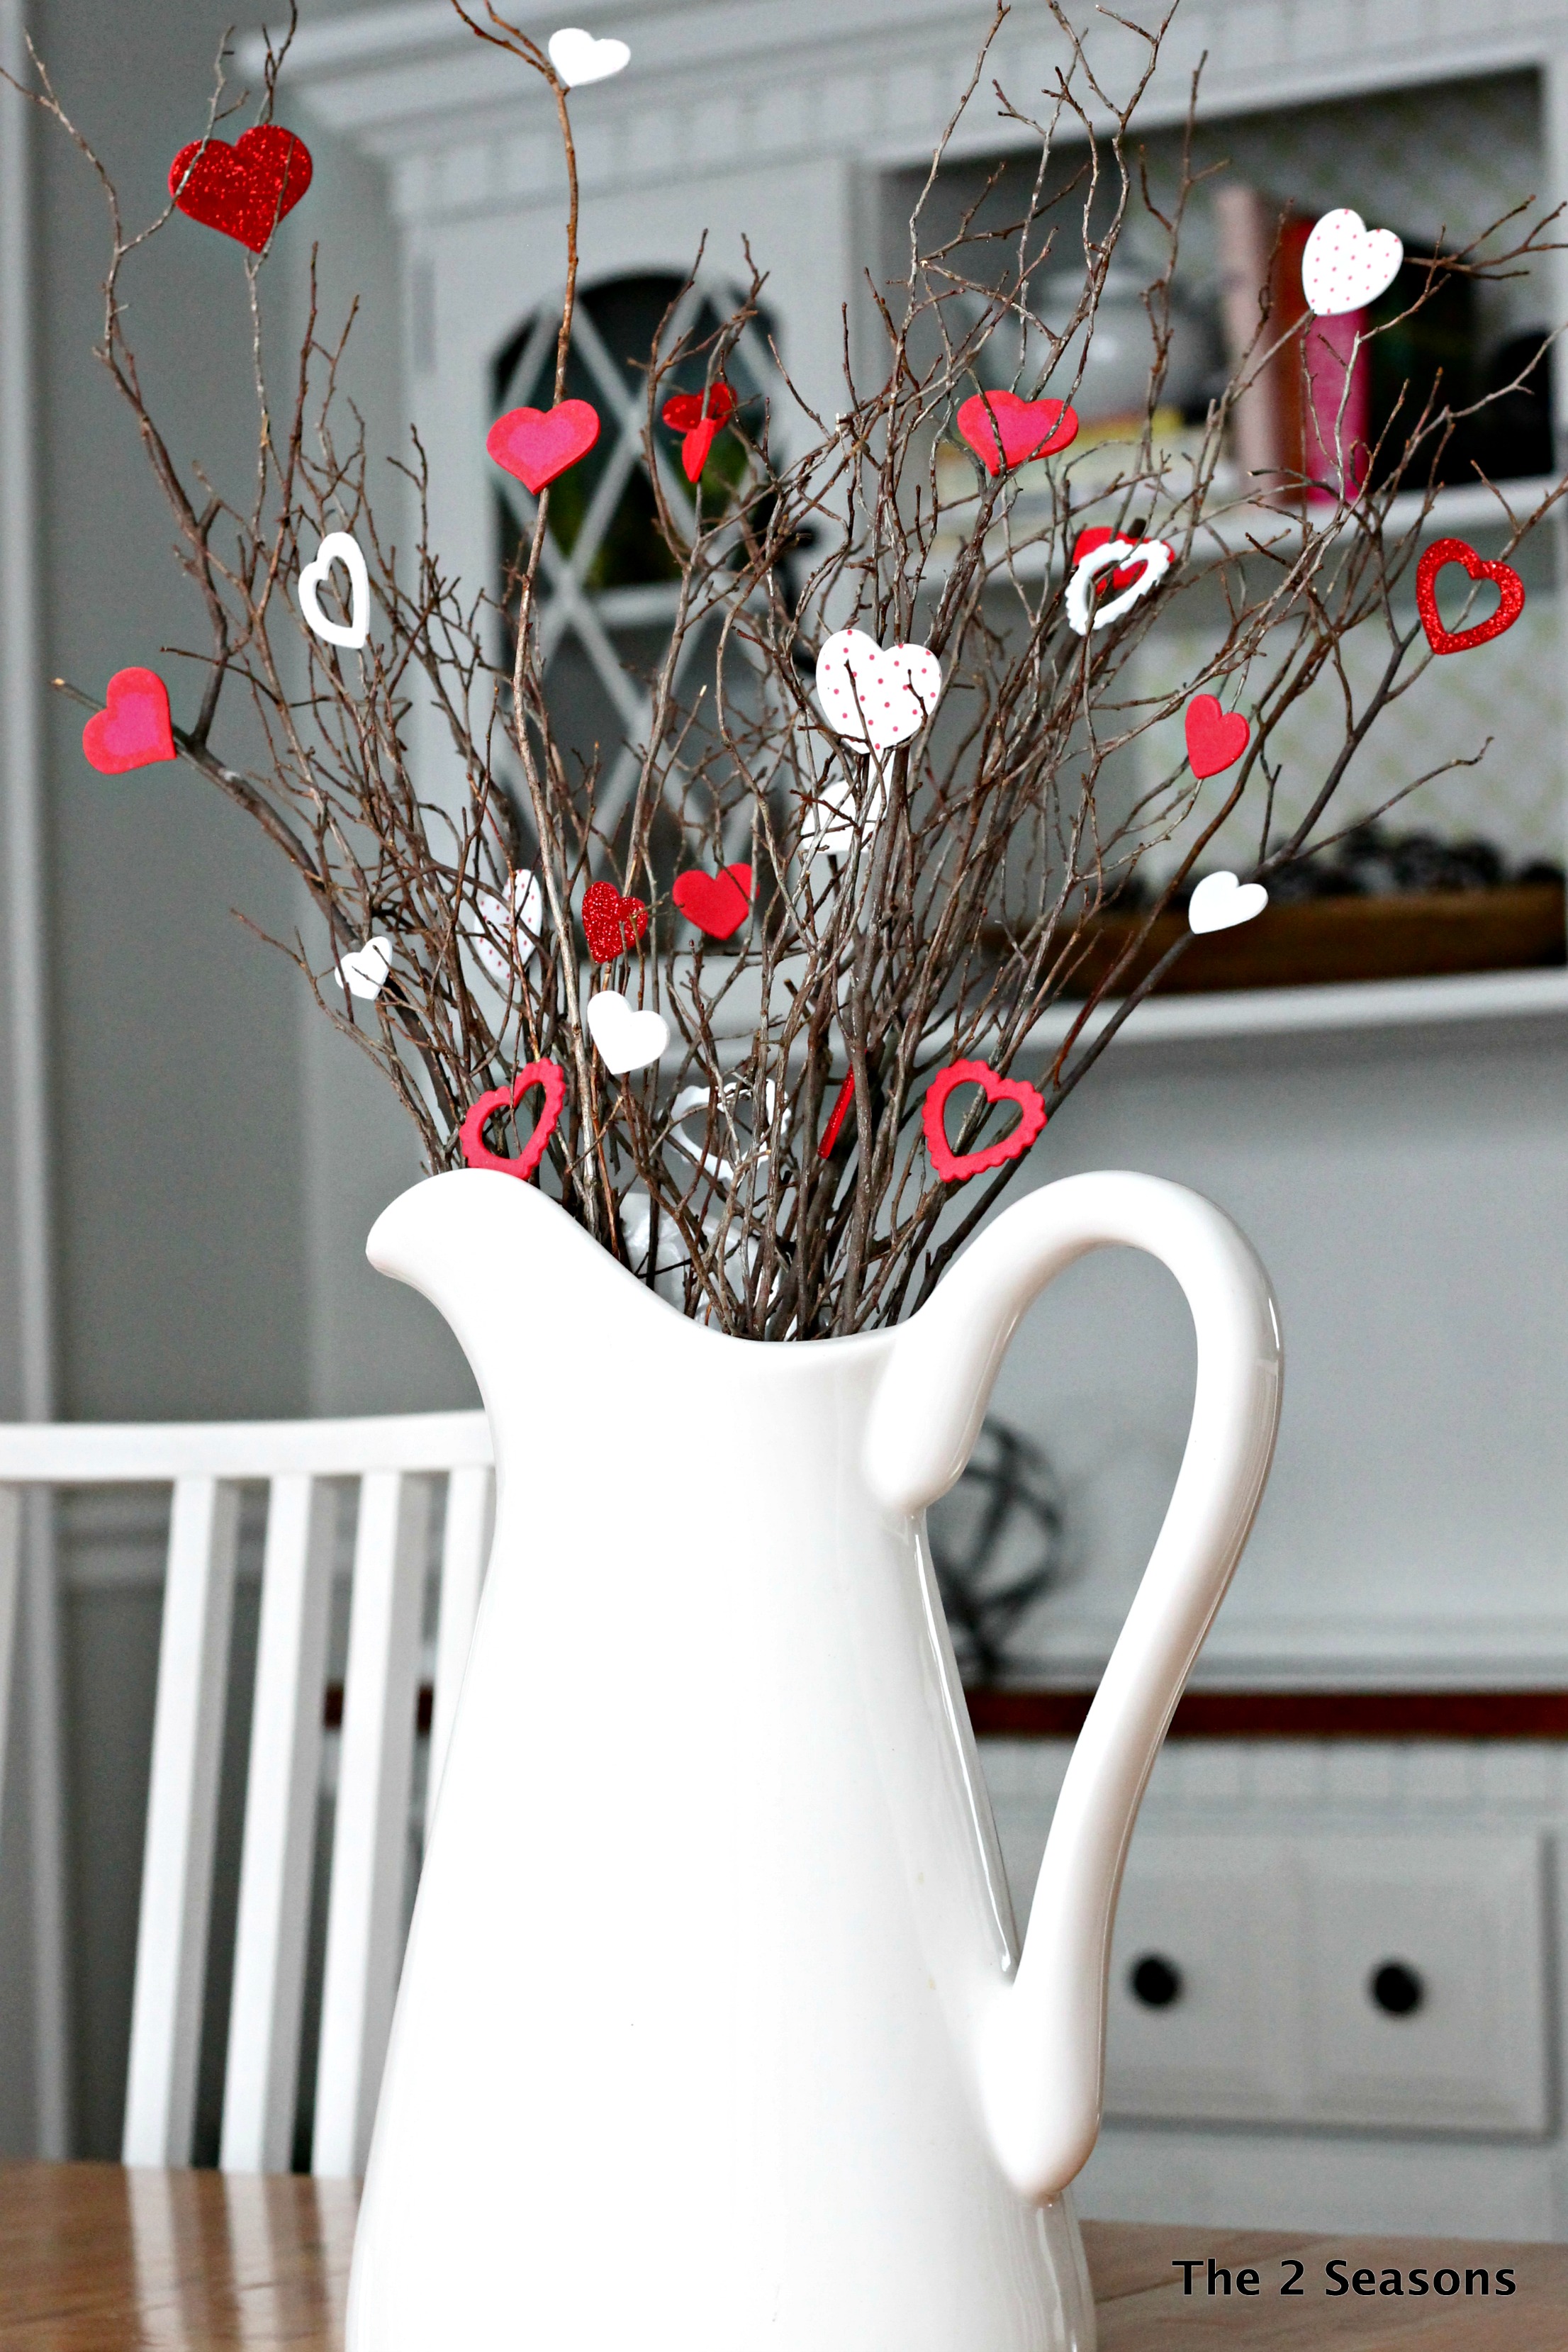 v1 - Easy to Make Valentine Crafts